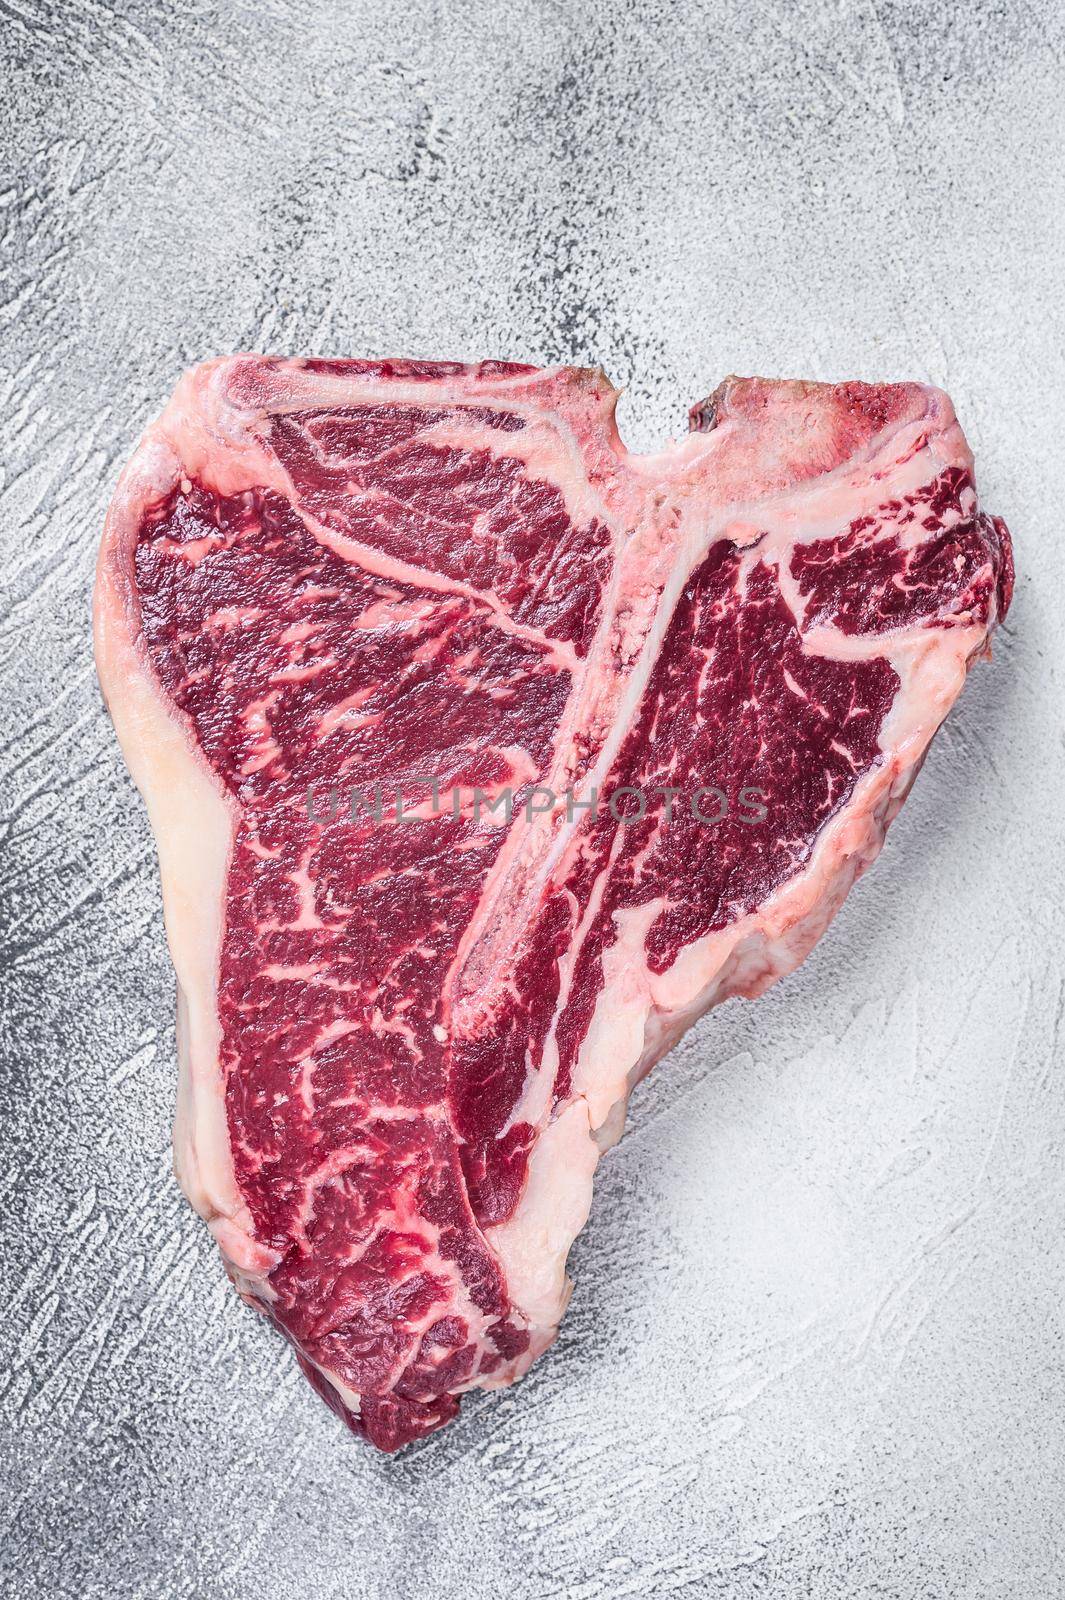 Raw T-bone or porterhouse Steak on kitchen table. White background. Top view.